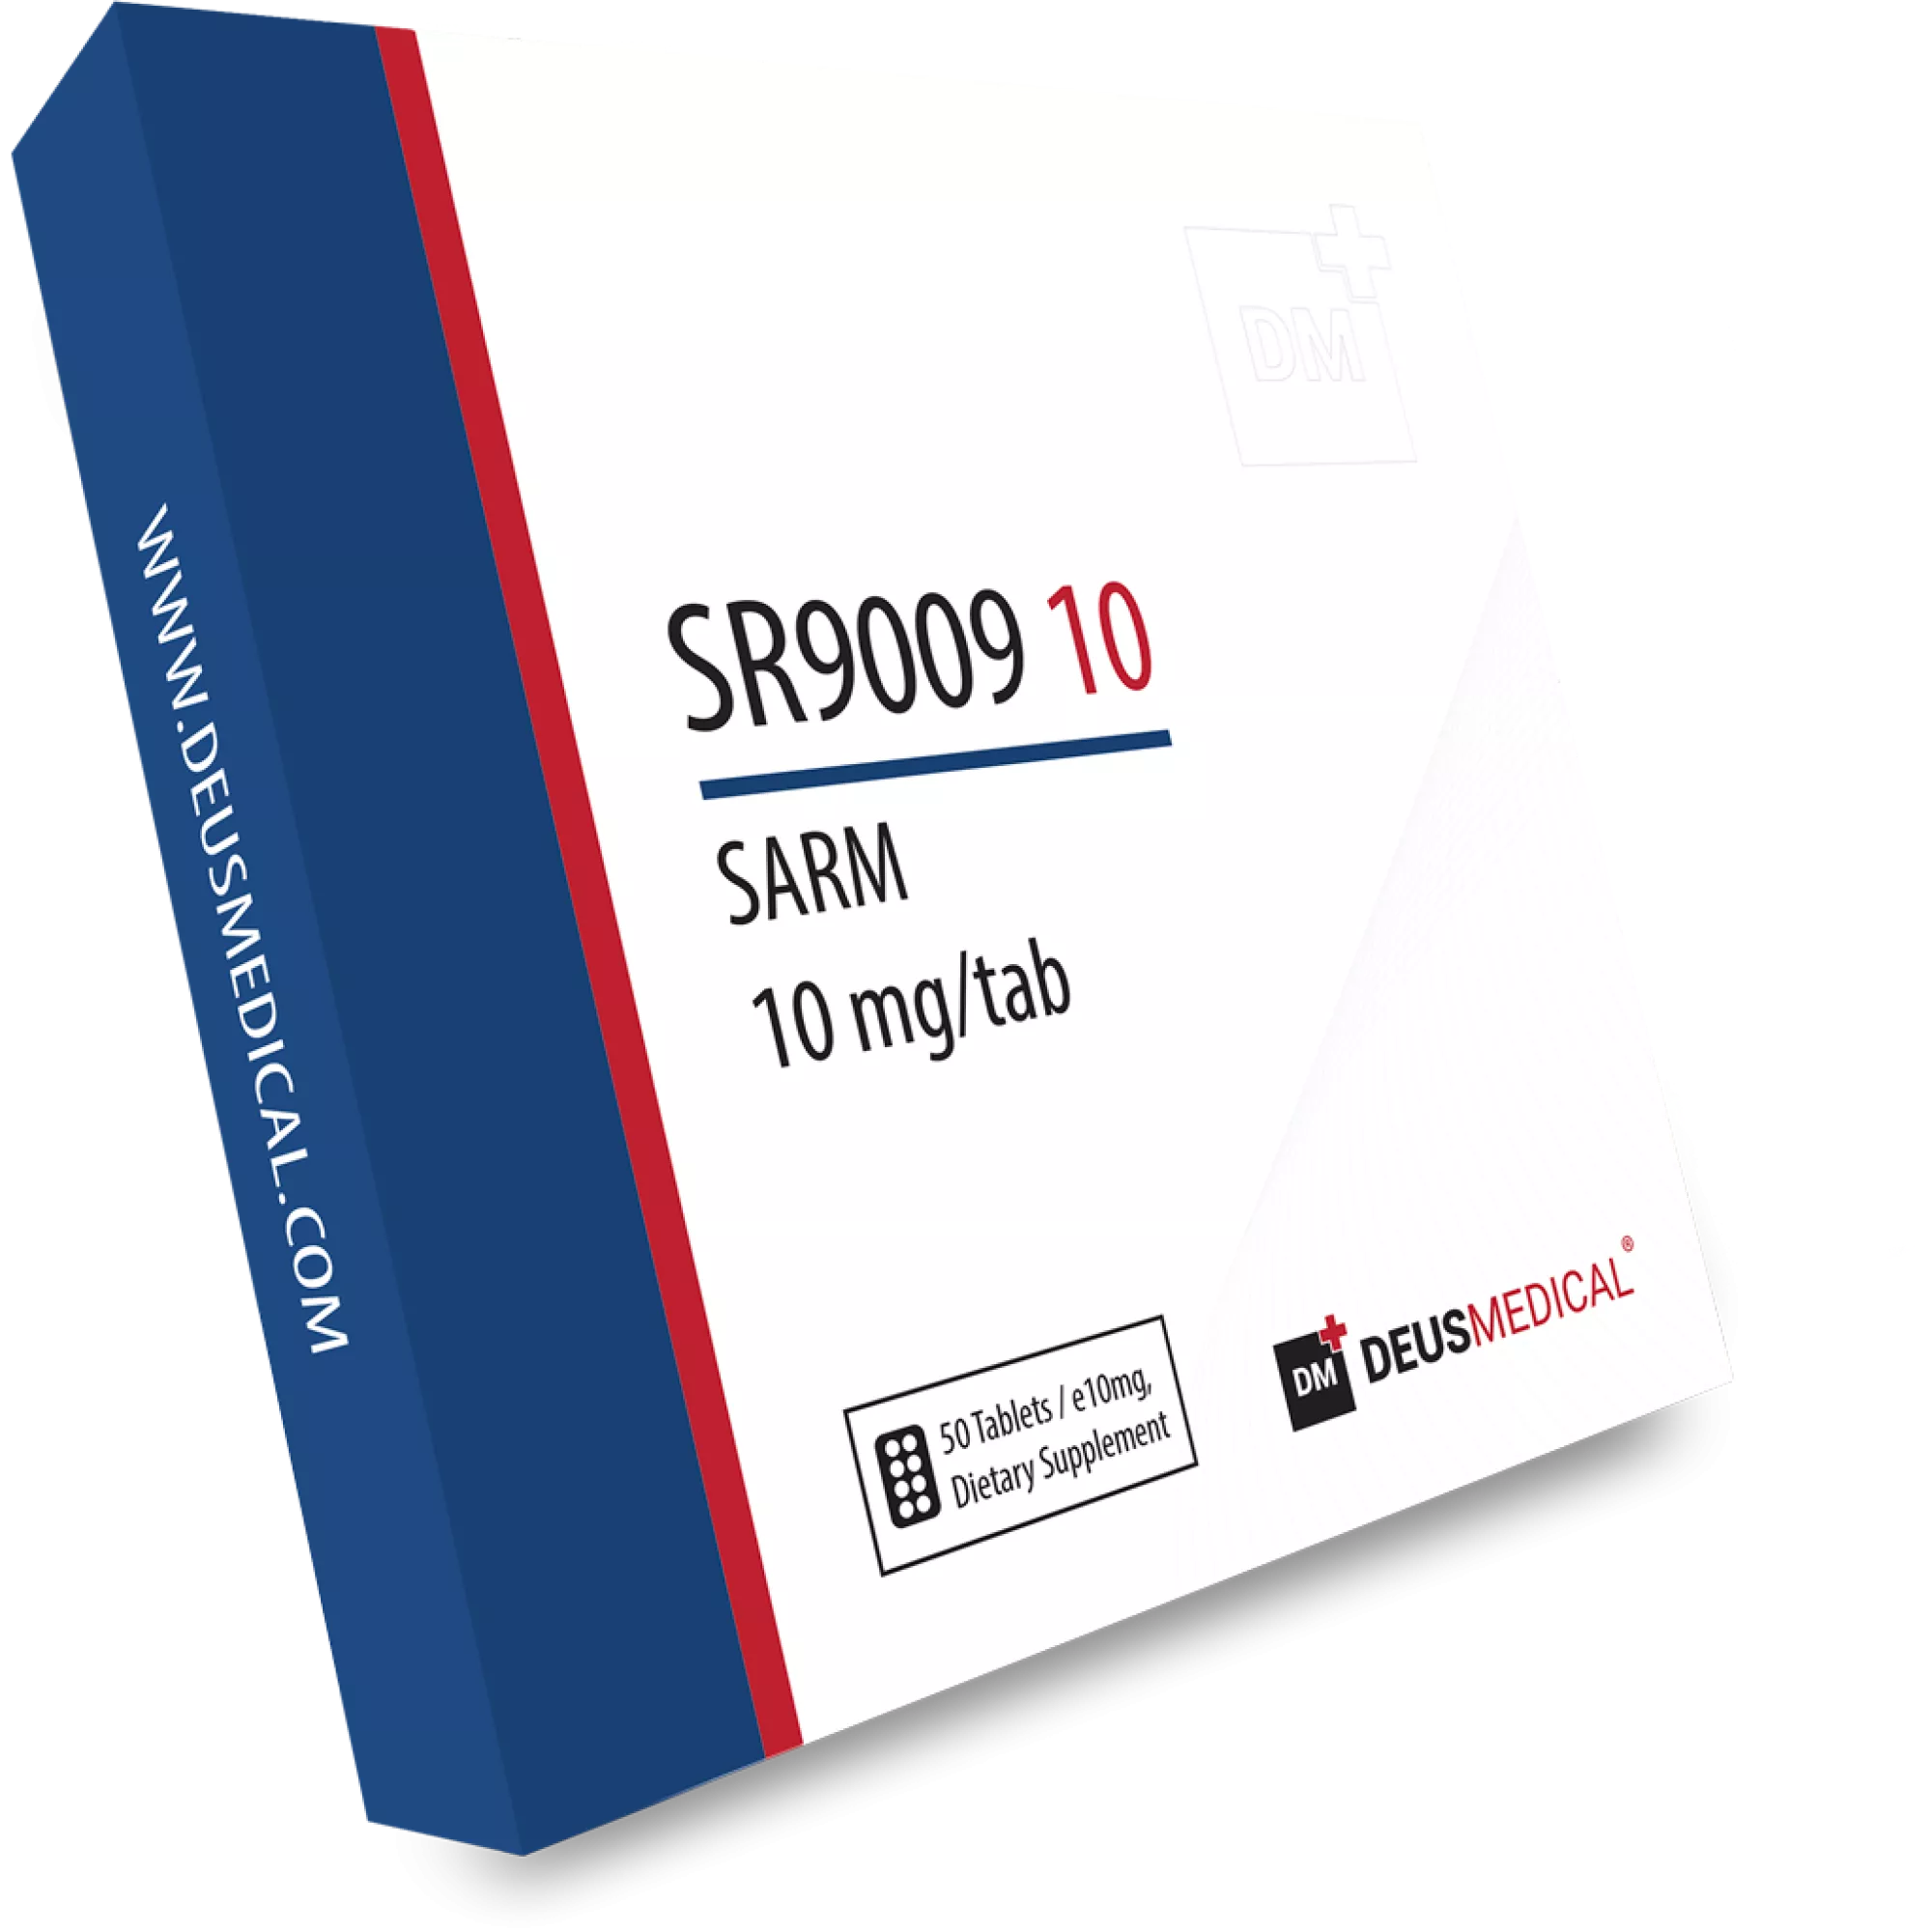 SR9009 10 (Stenabolic), Deus Medical, Köp steroider online - www.deuspower.shop